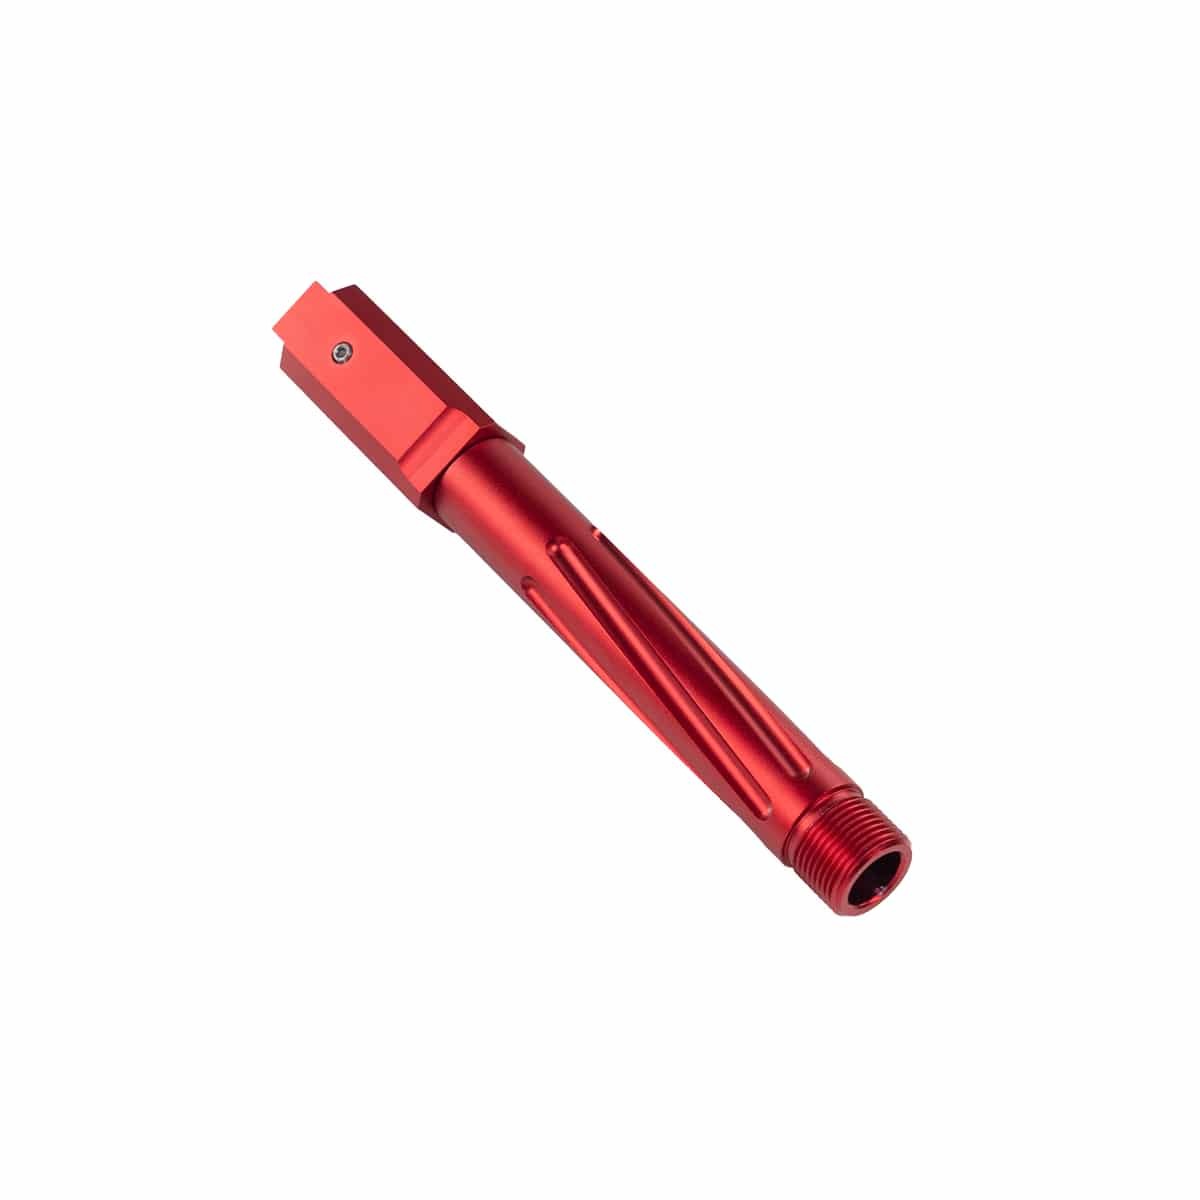 Novritsch SSP18 – Outer barrel TDC (CNC machined) Red